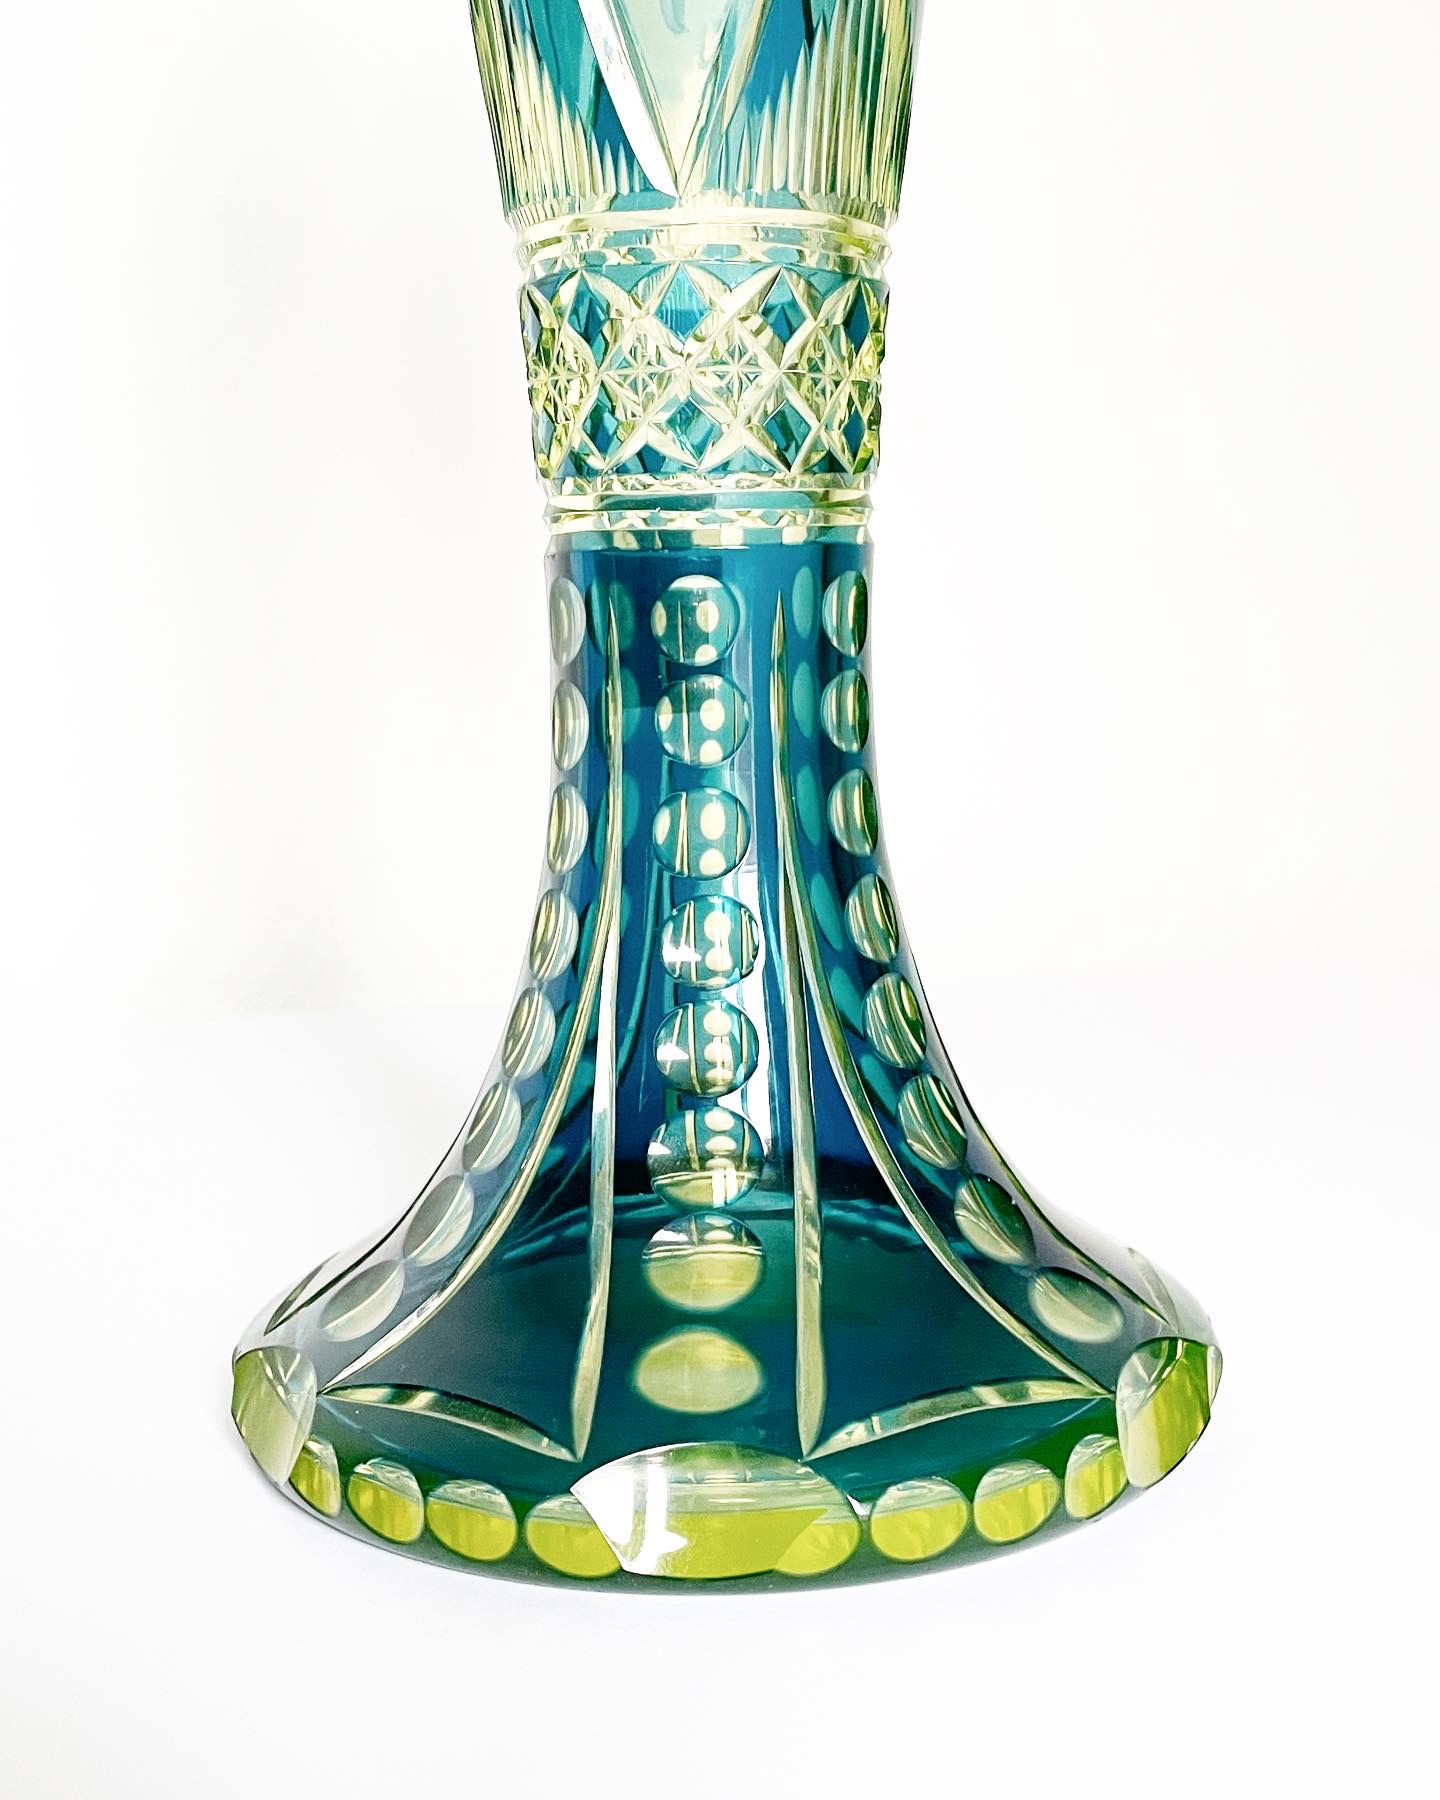 vase-jonghen-val-saint-lambert-urane-bleu-pétrole-art-nouveau-collection-cristal-léon-ledru-dégagé-acide-aurore-morisse-antiquaire-marchand-art-liège-paris2